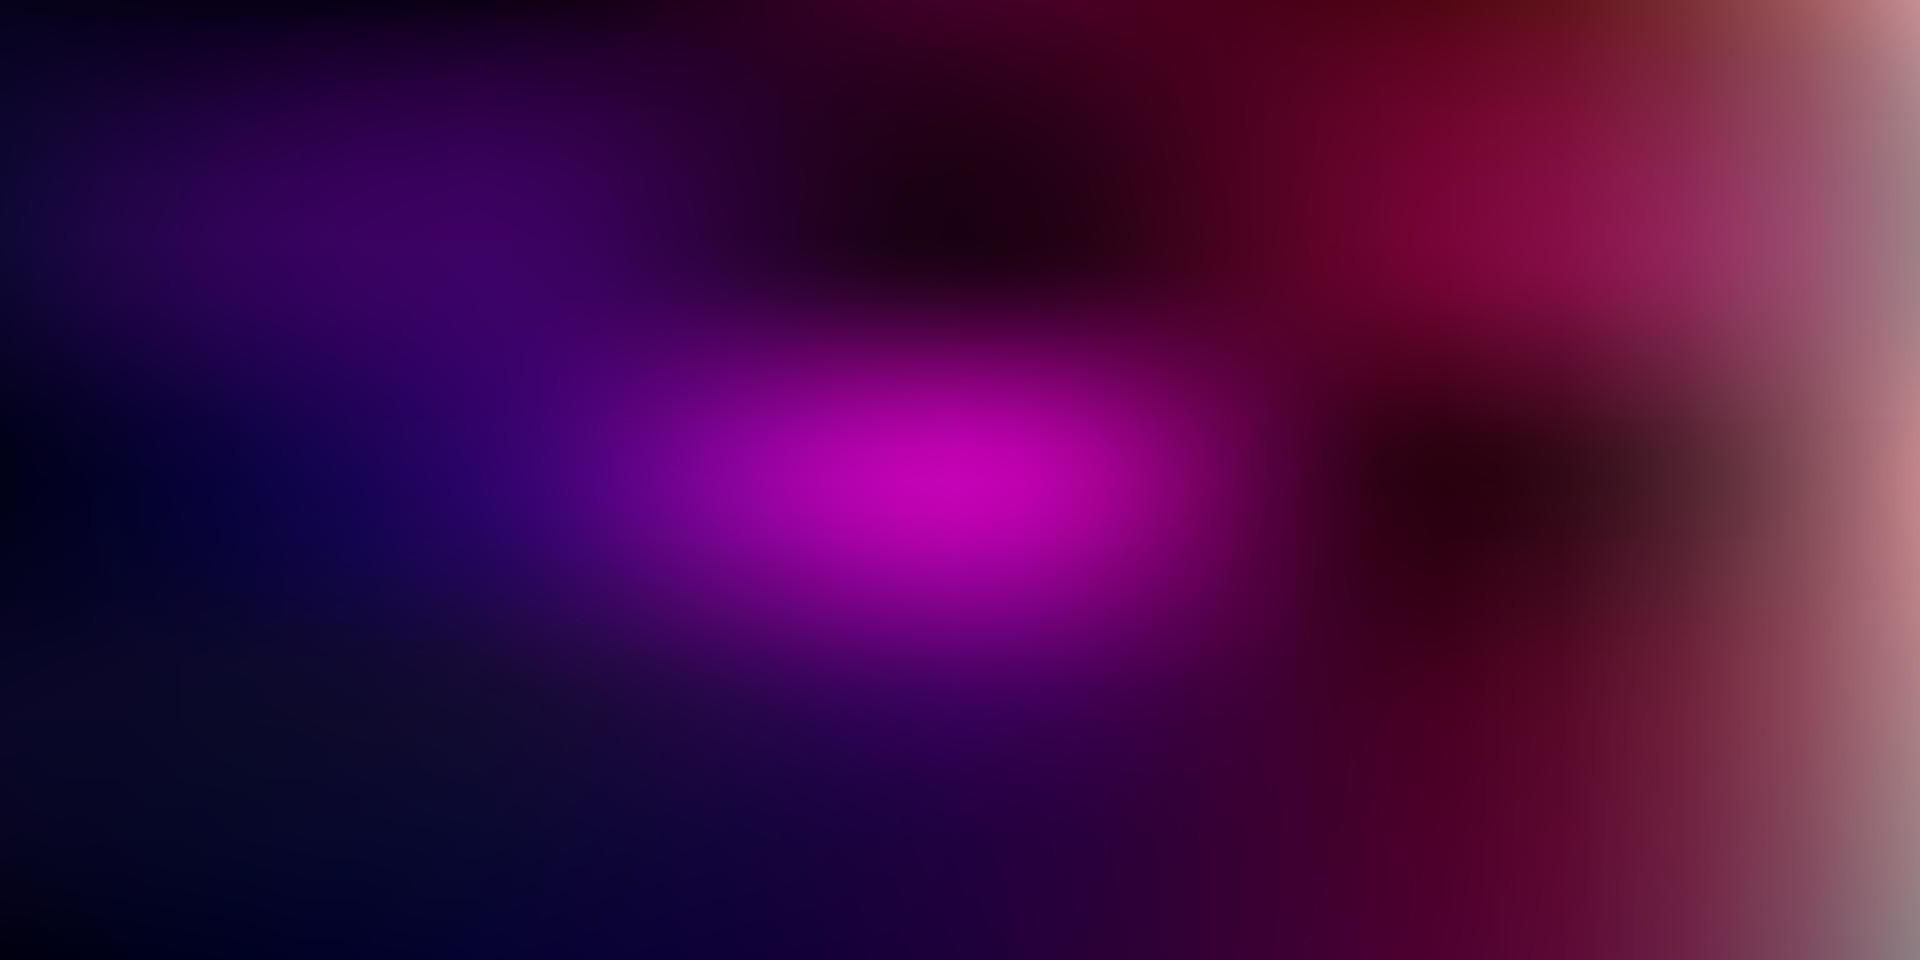 dunkelvioletter, rosa Vektor unscharfer Hintergrund.